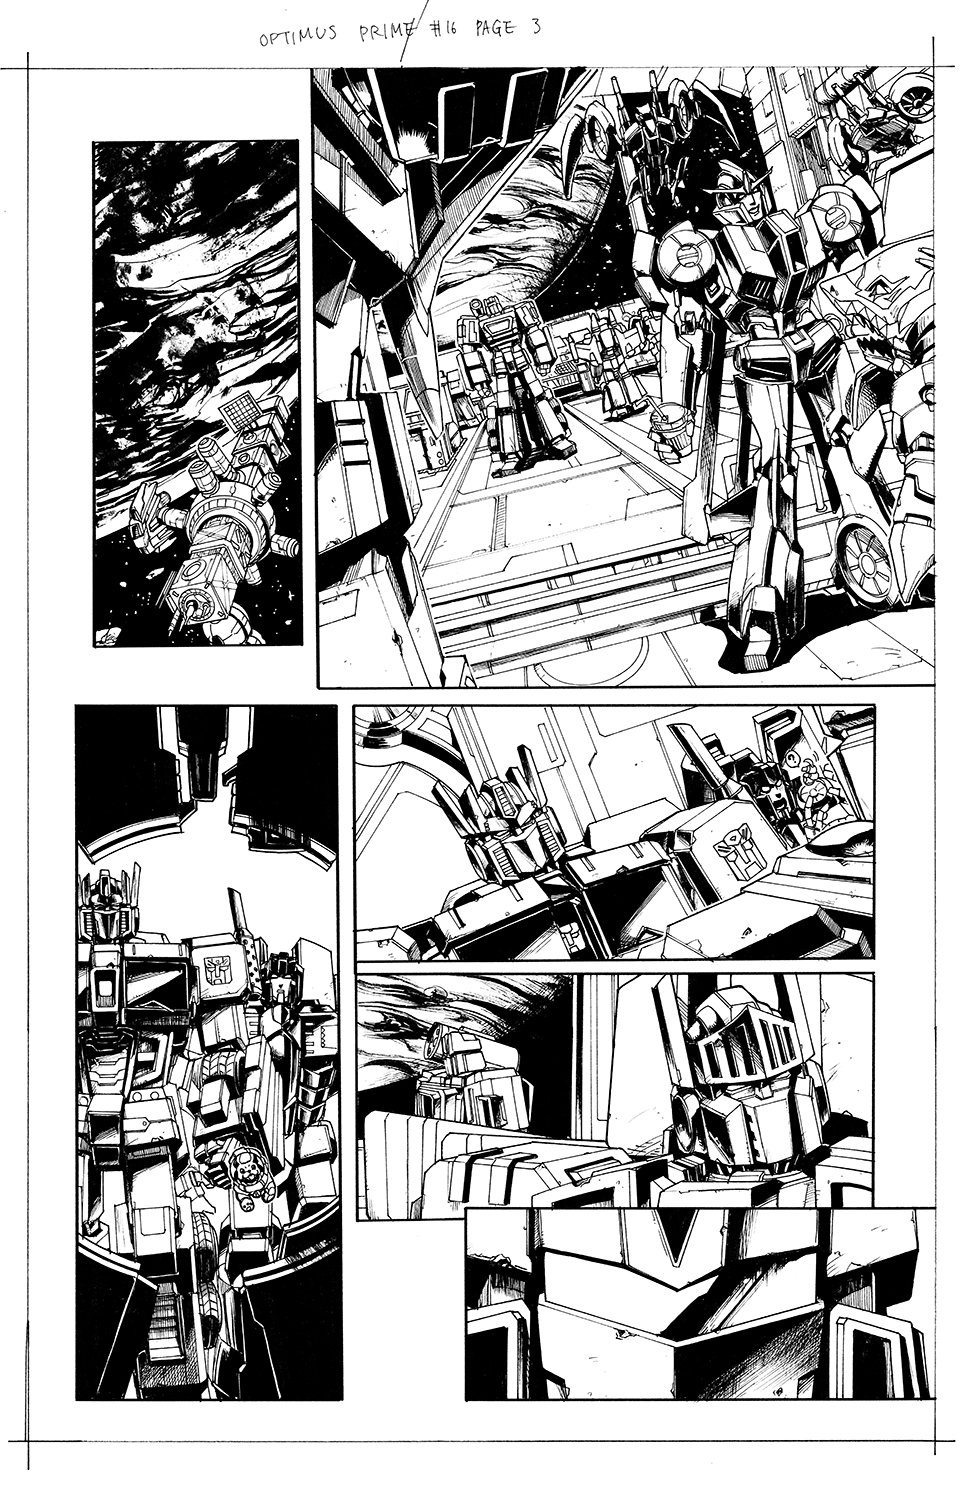 Optimus Prime #16 Page 03